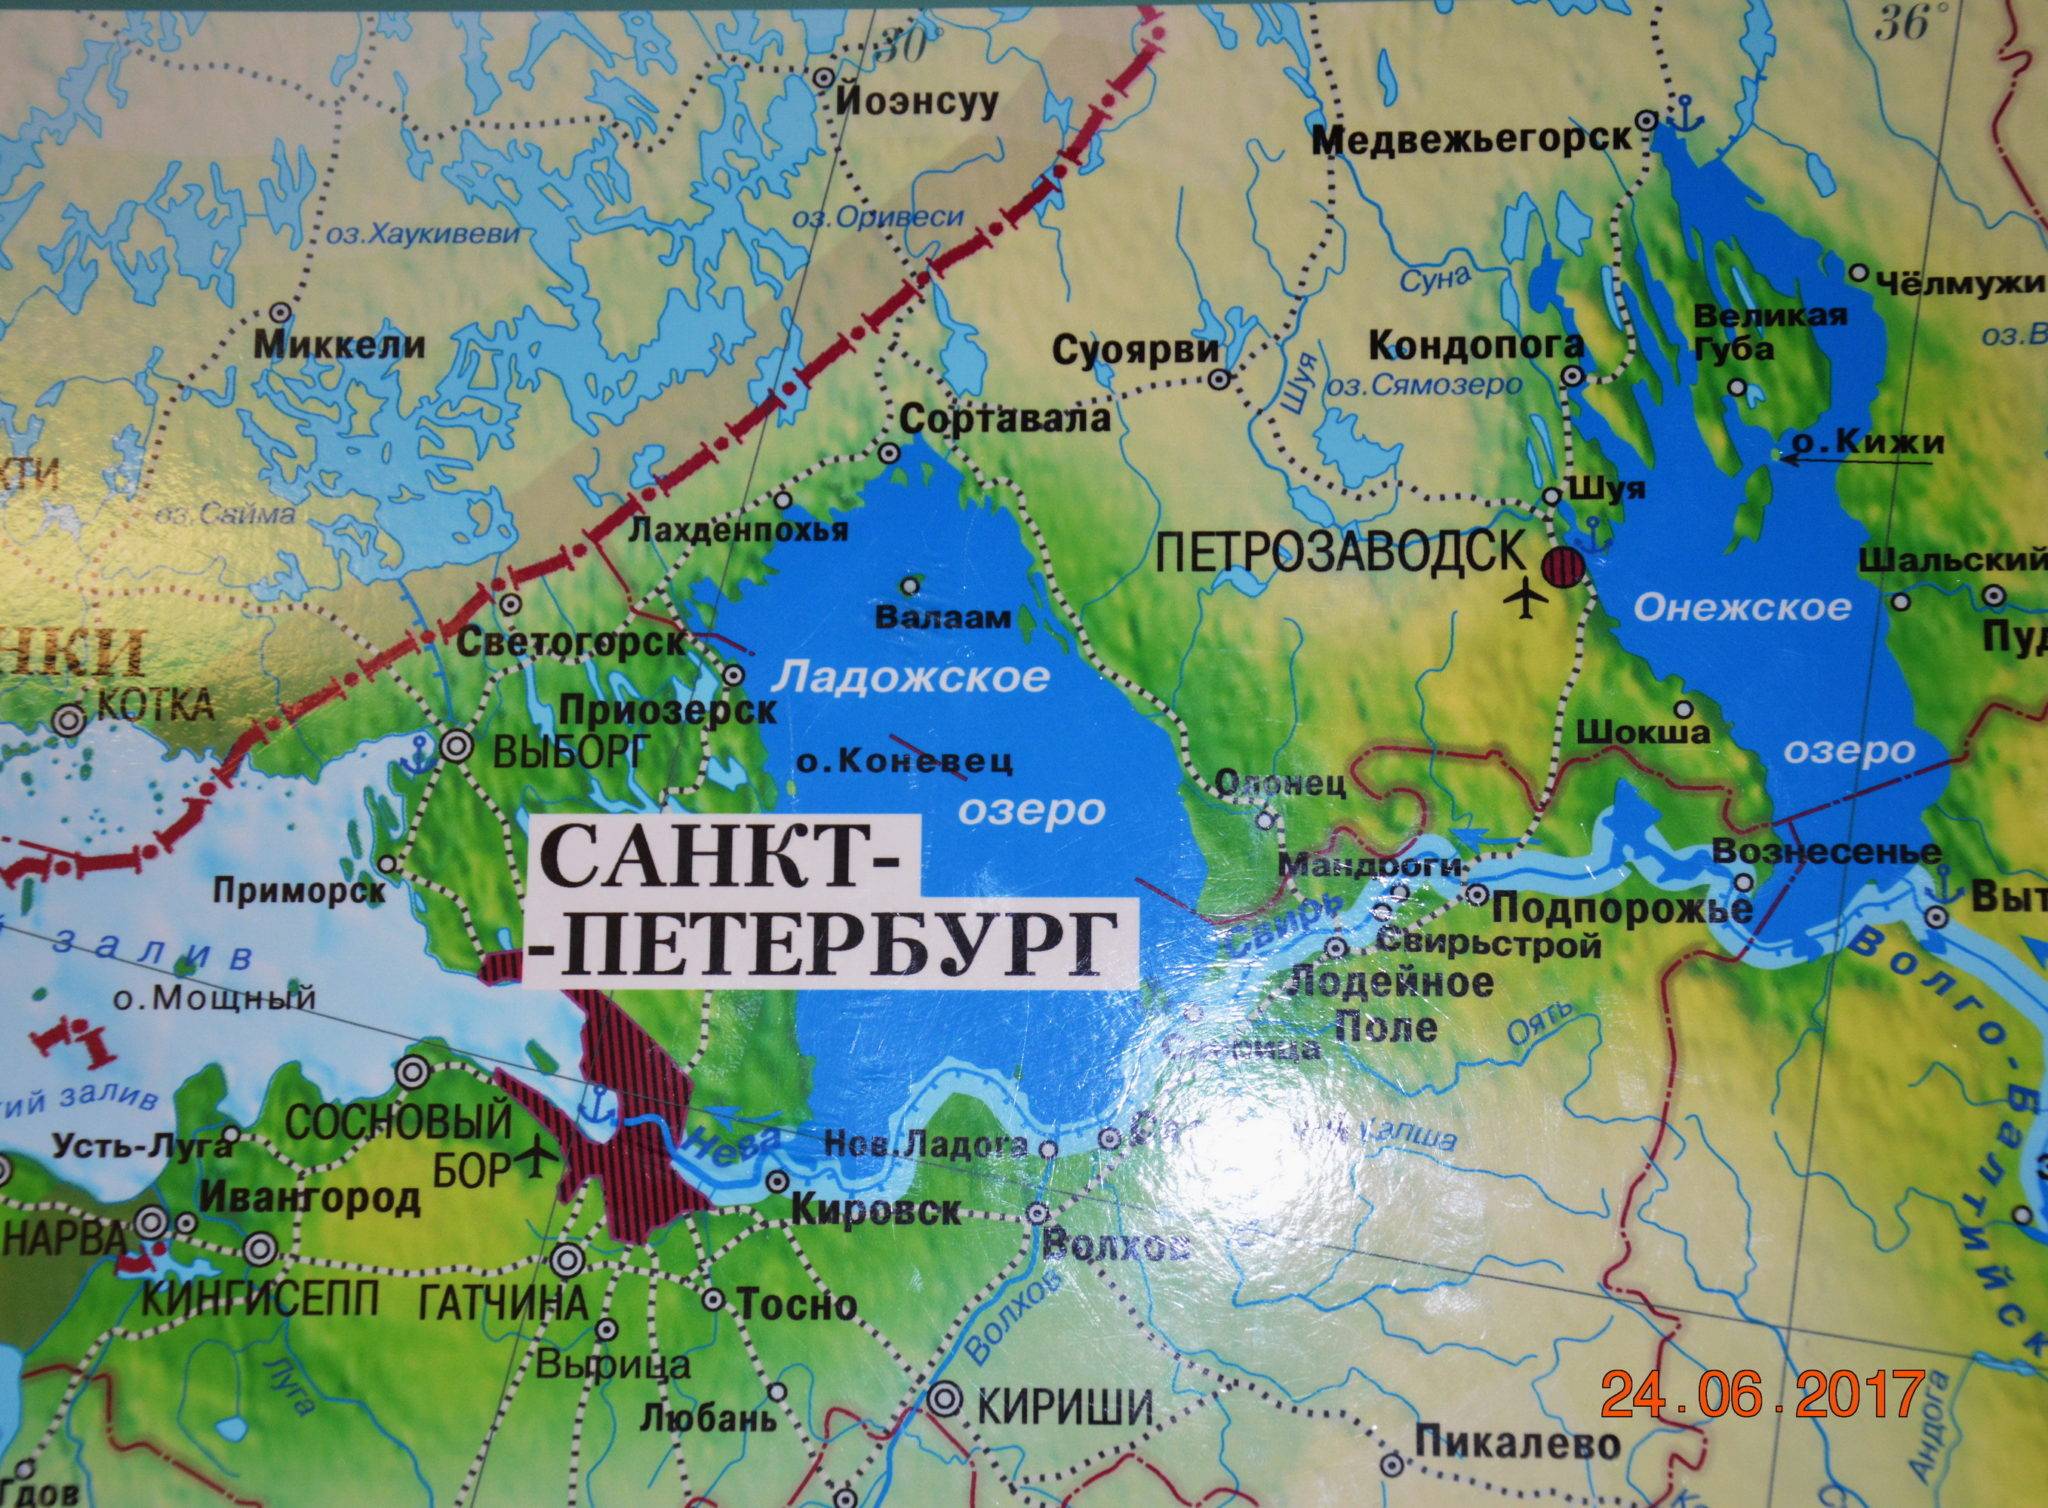 Евразия ладожская. Ладожское озеро местоположение. Валаам на карте Ладожского озера. Лоджскоеозеро на карте. Ладожское озеро на карте России.